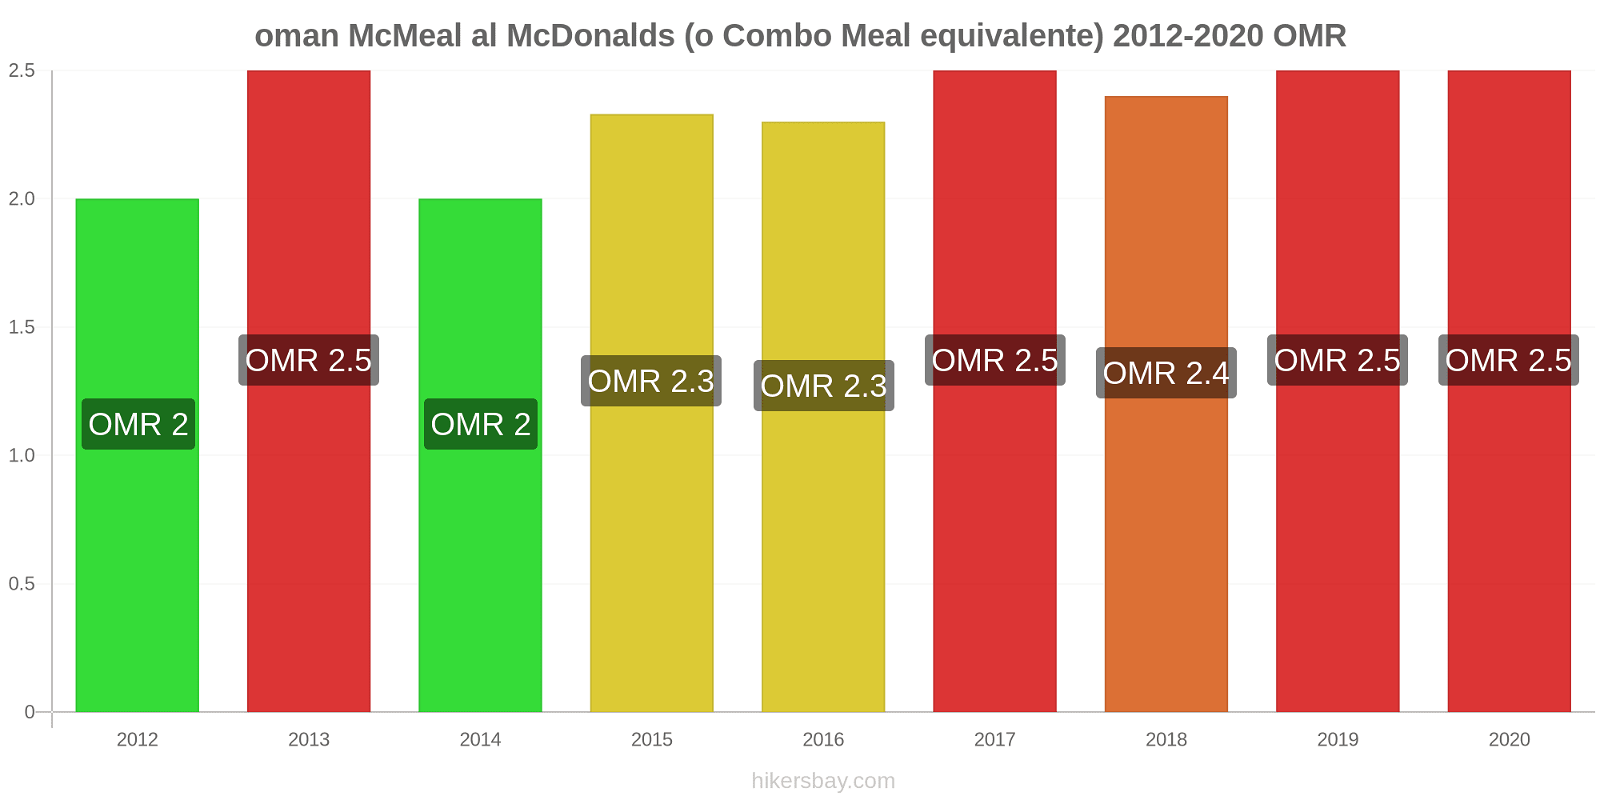 oman variazioni di prezzo McMeal al McDonalds (o in un equivalente fastfood) hikersbay.com